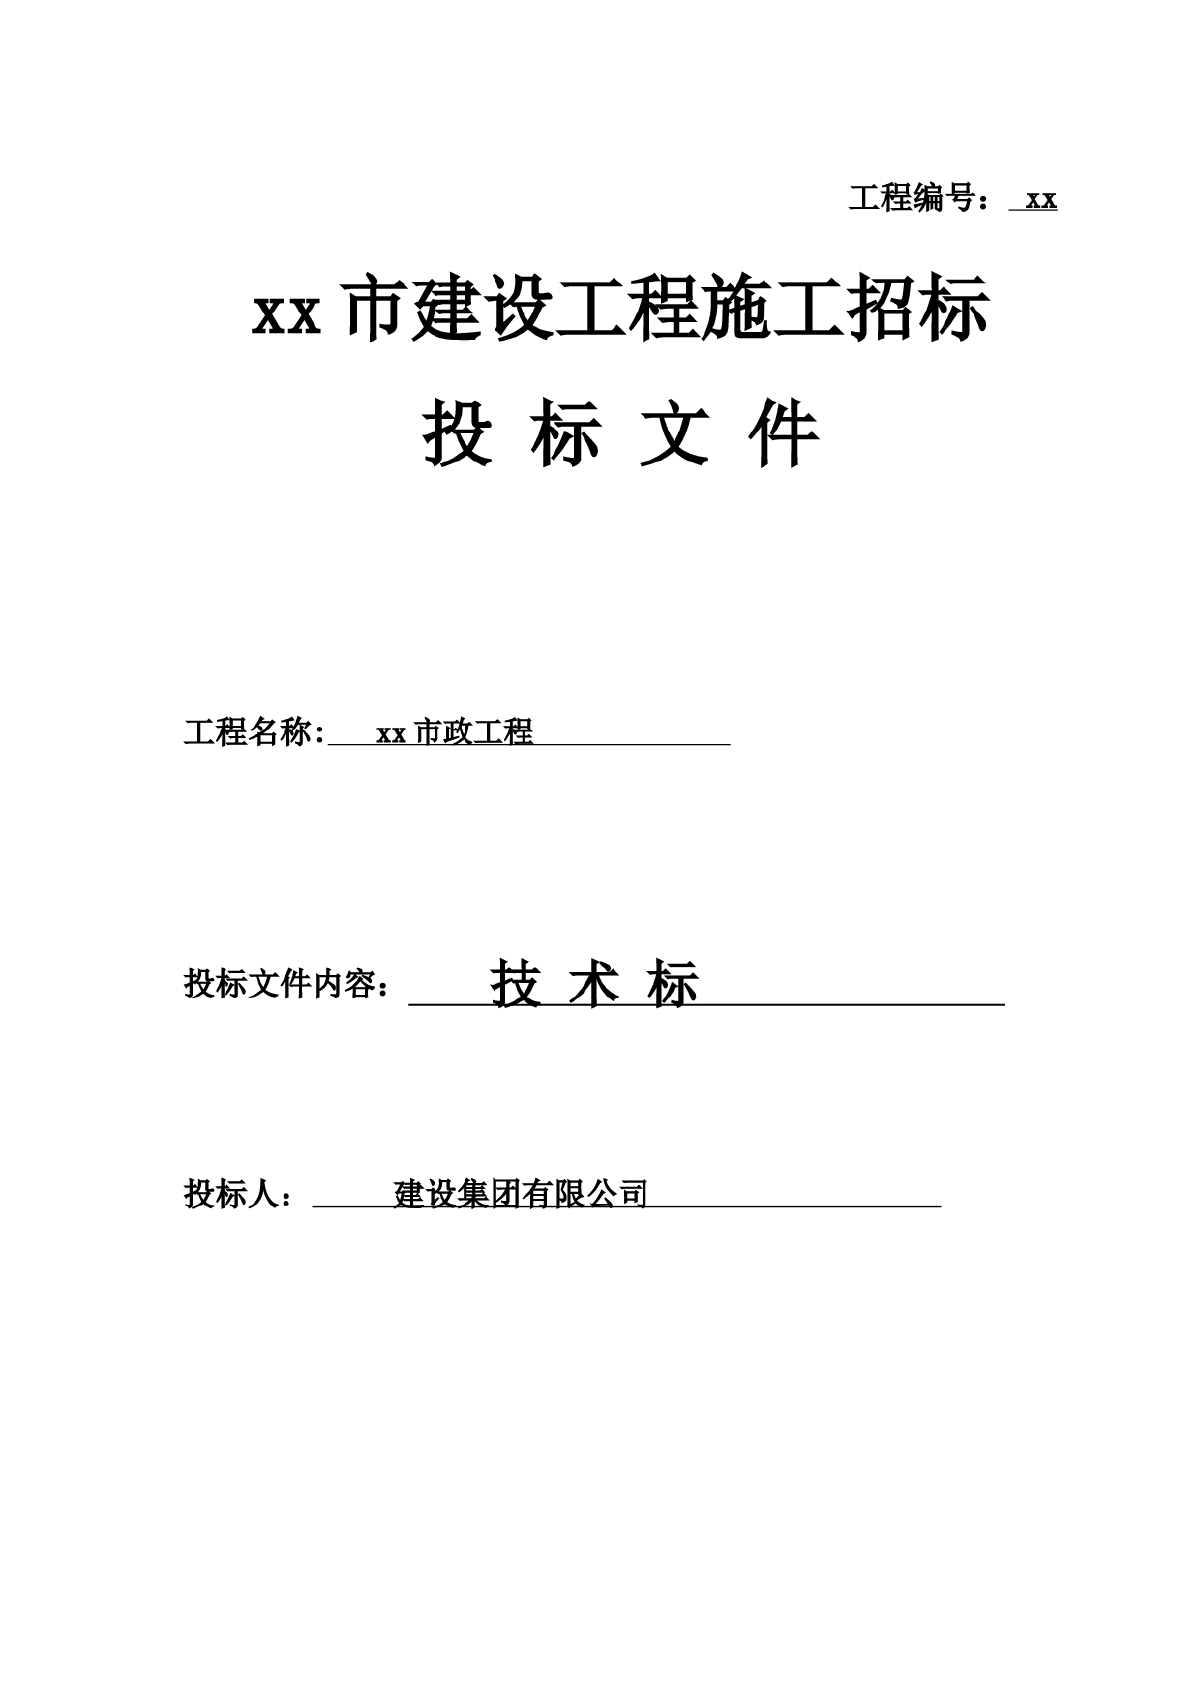 深圳龙华二线某市政工程技术标书